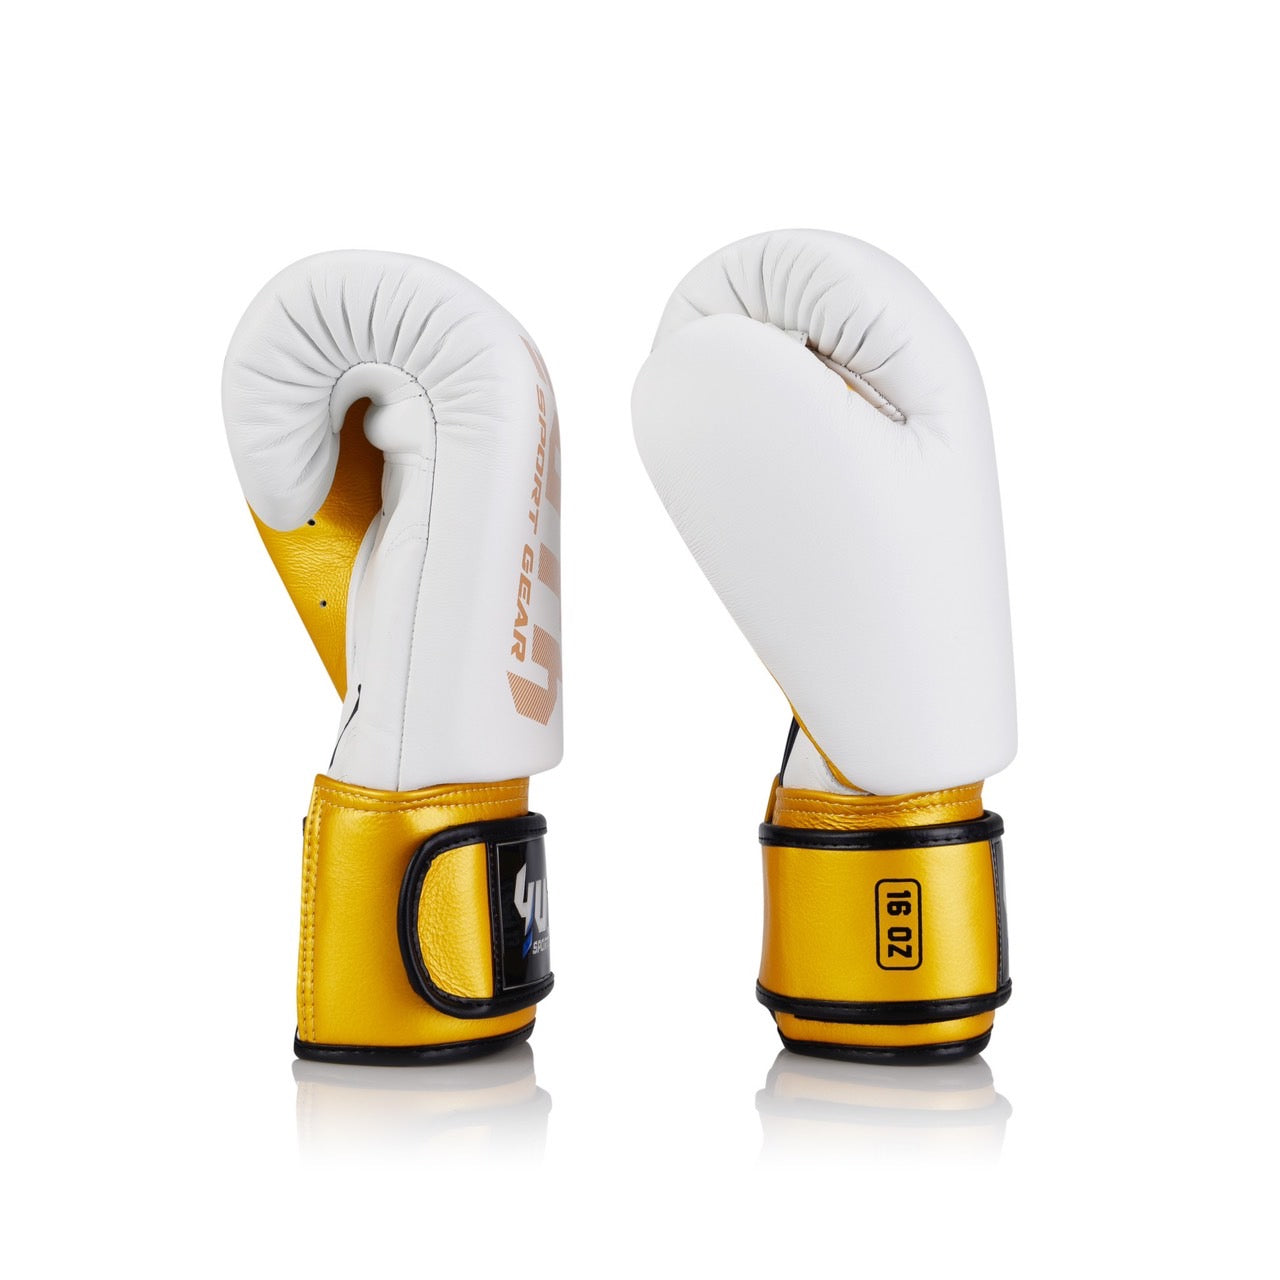 Боксерские перчатки Yuth BGL20 Кожа Белое Золото